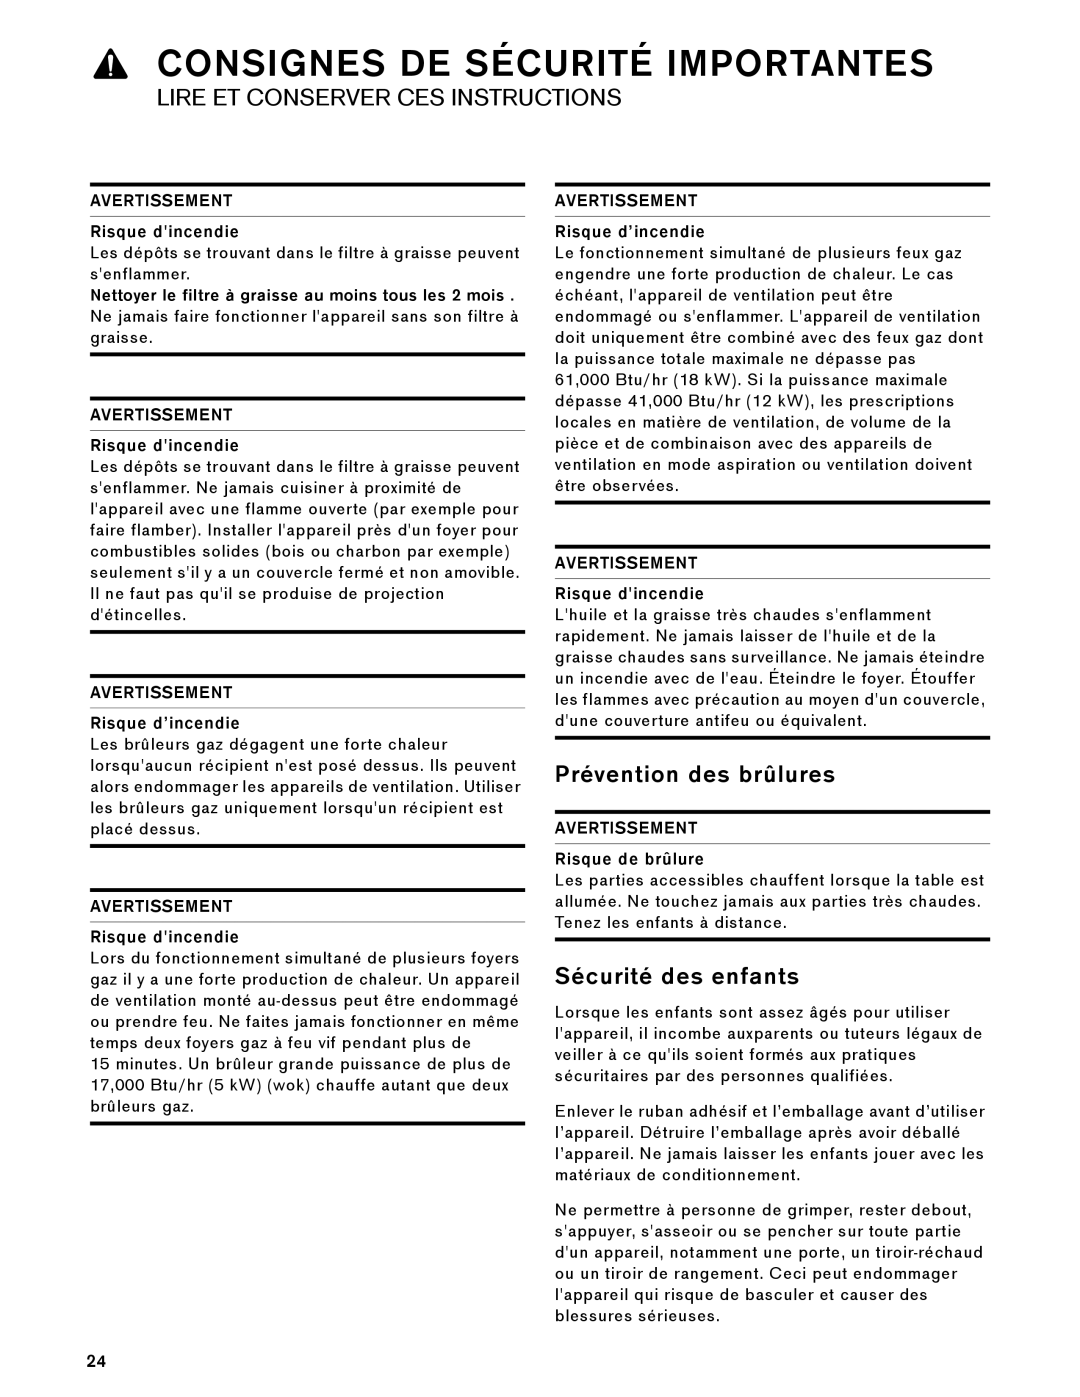 Gaggenau AW 230 790 manual Prévention des brûlures, Sécurité des enfants, AVERTISSEMENT Risque dincendie 